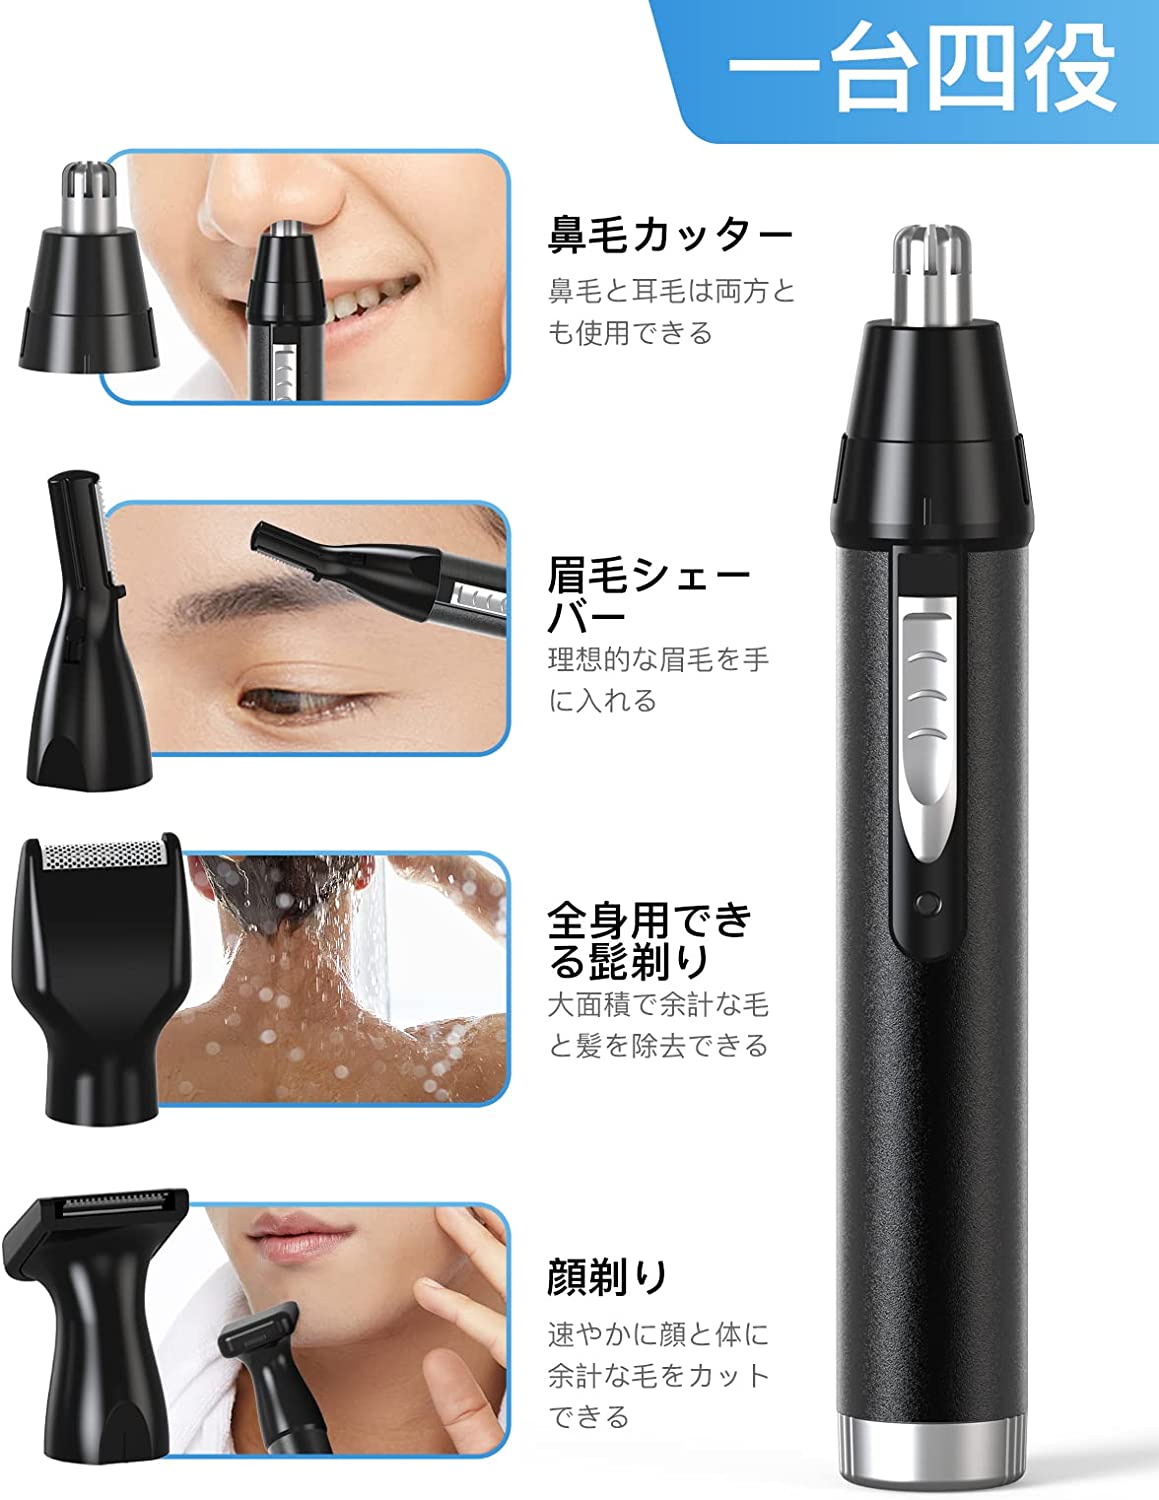 眉毛シェーバー 鼻毛カッター フェイスシェーバー Linp USB 充電式 眉毛カッター 産毛 多機能シェーバー 洗える